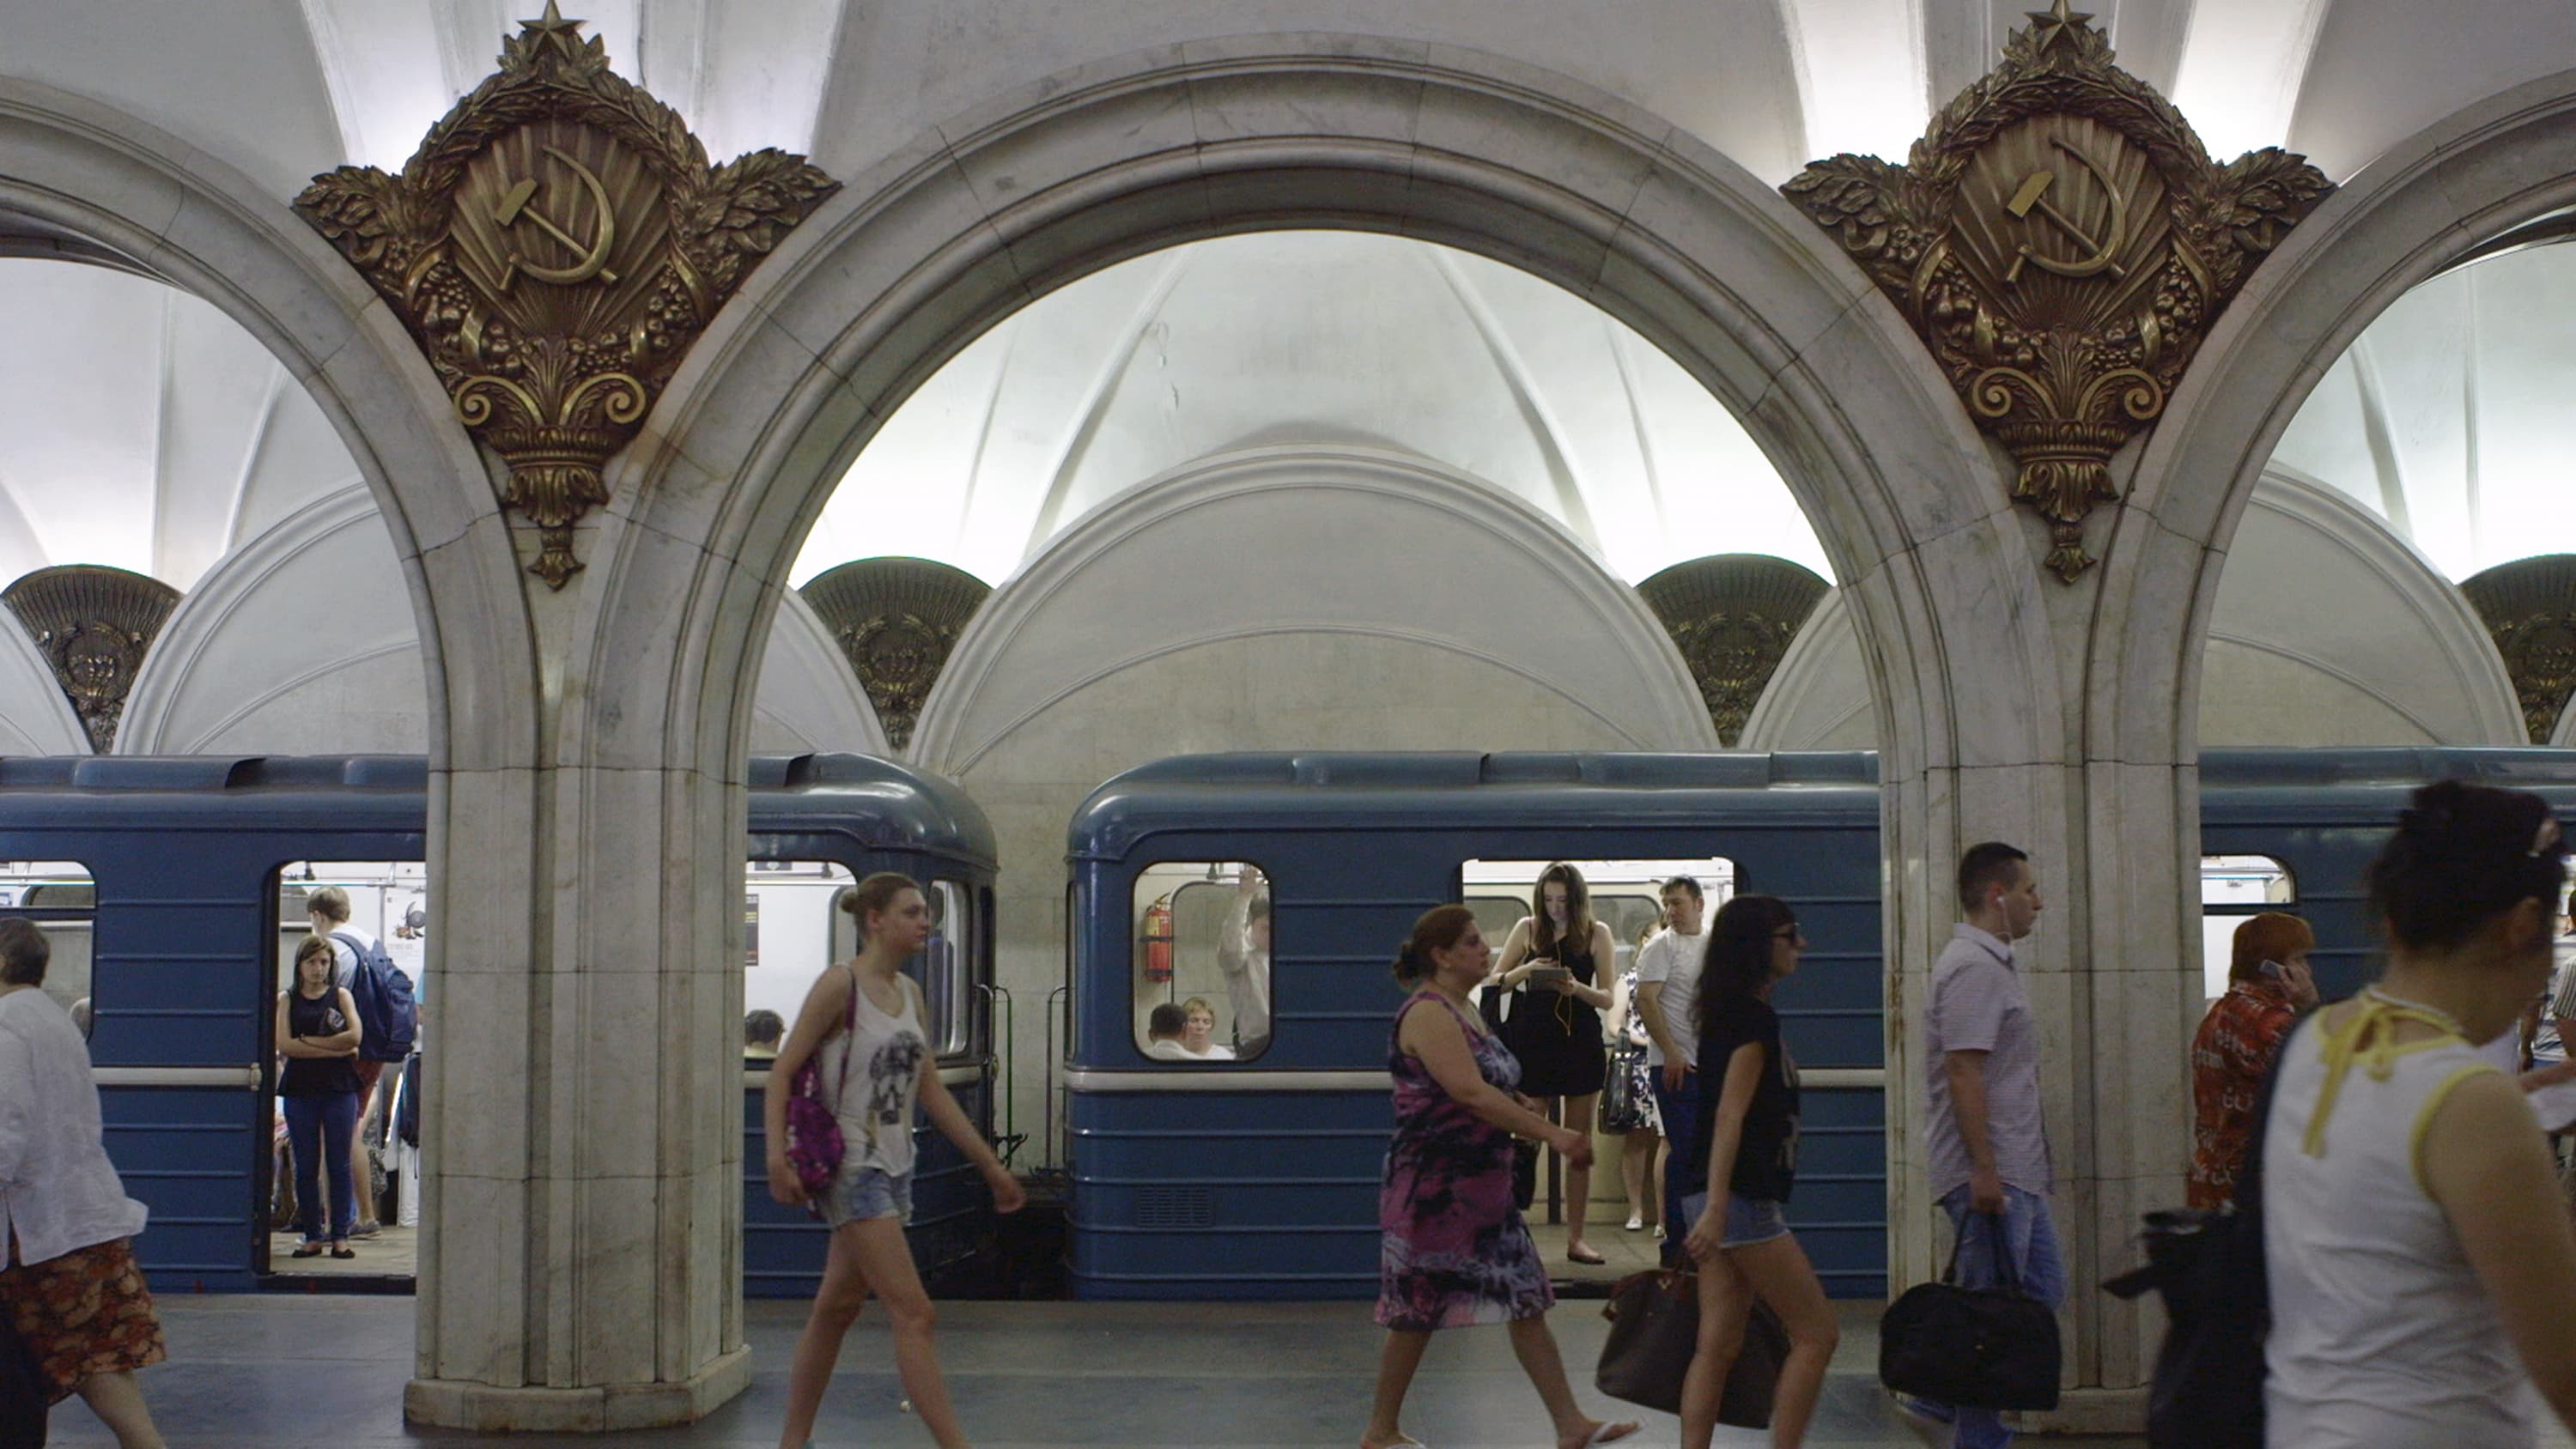 Comment nous avons construit le métro de Moscou